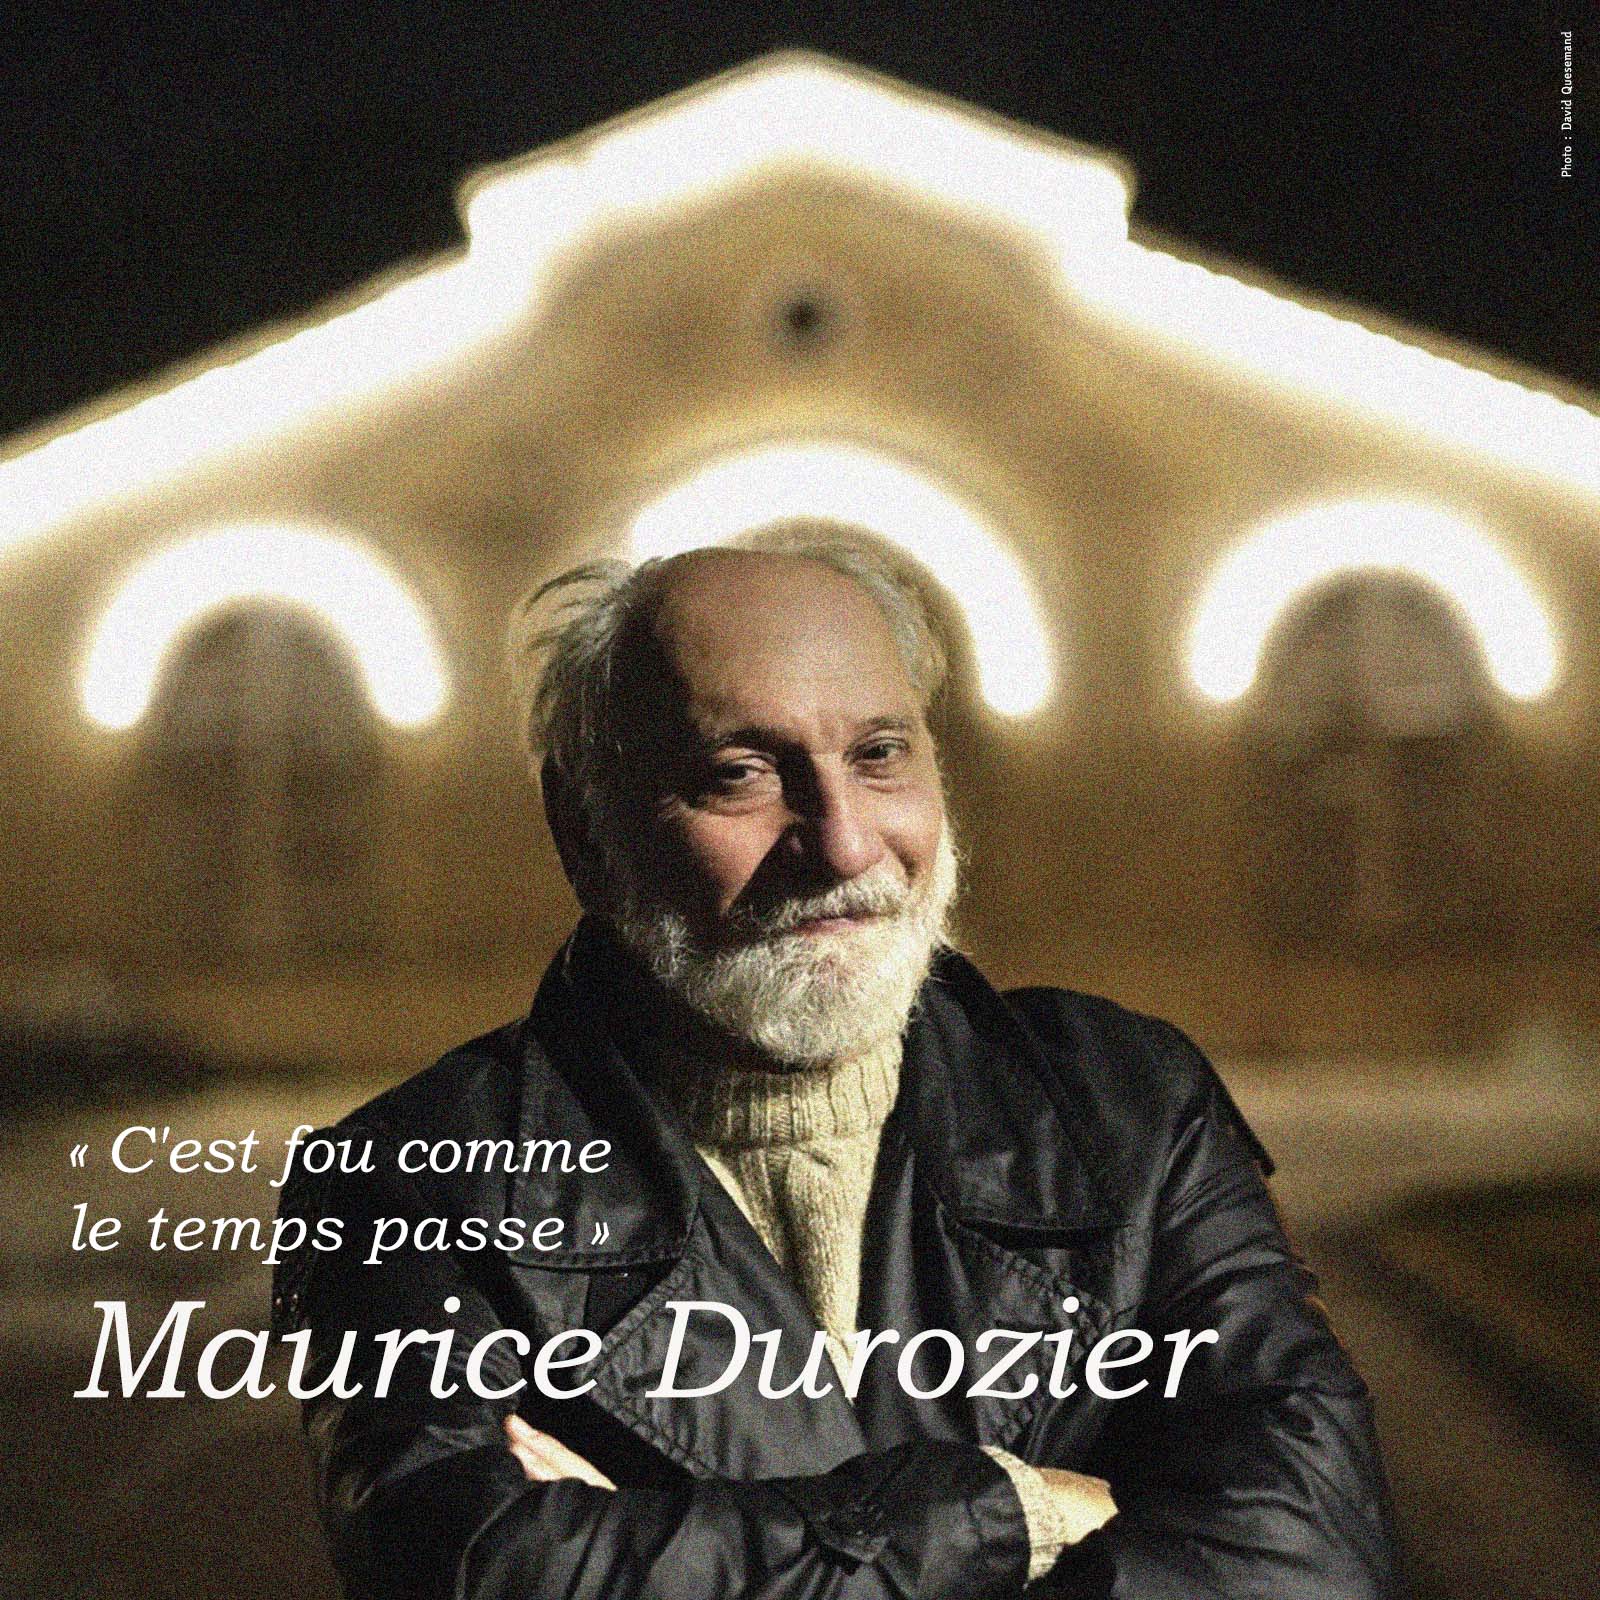 Maurice Durozier